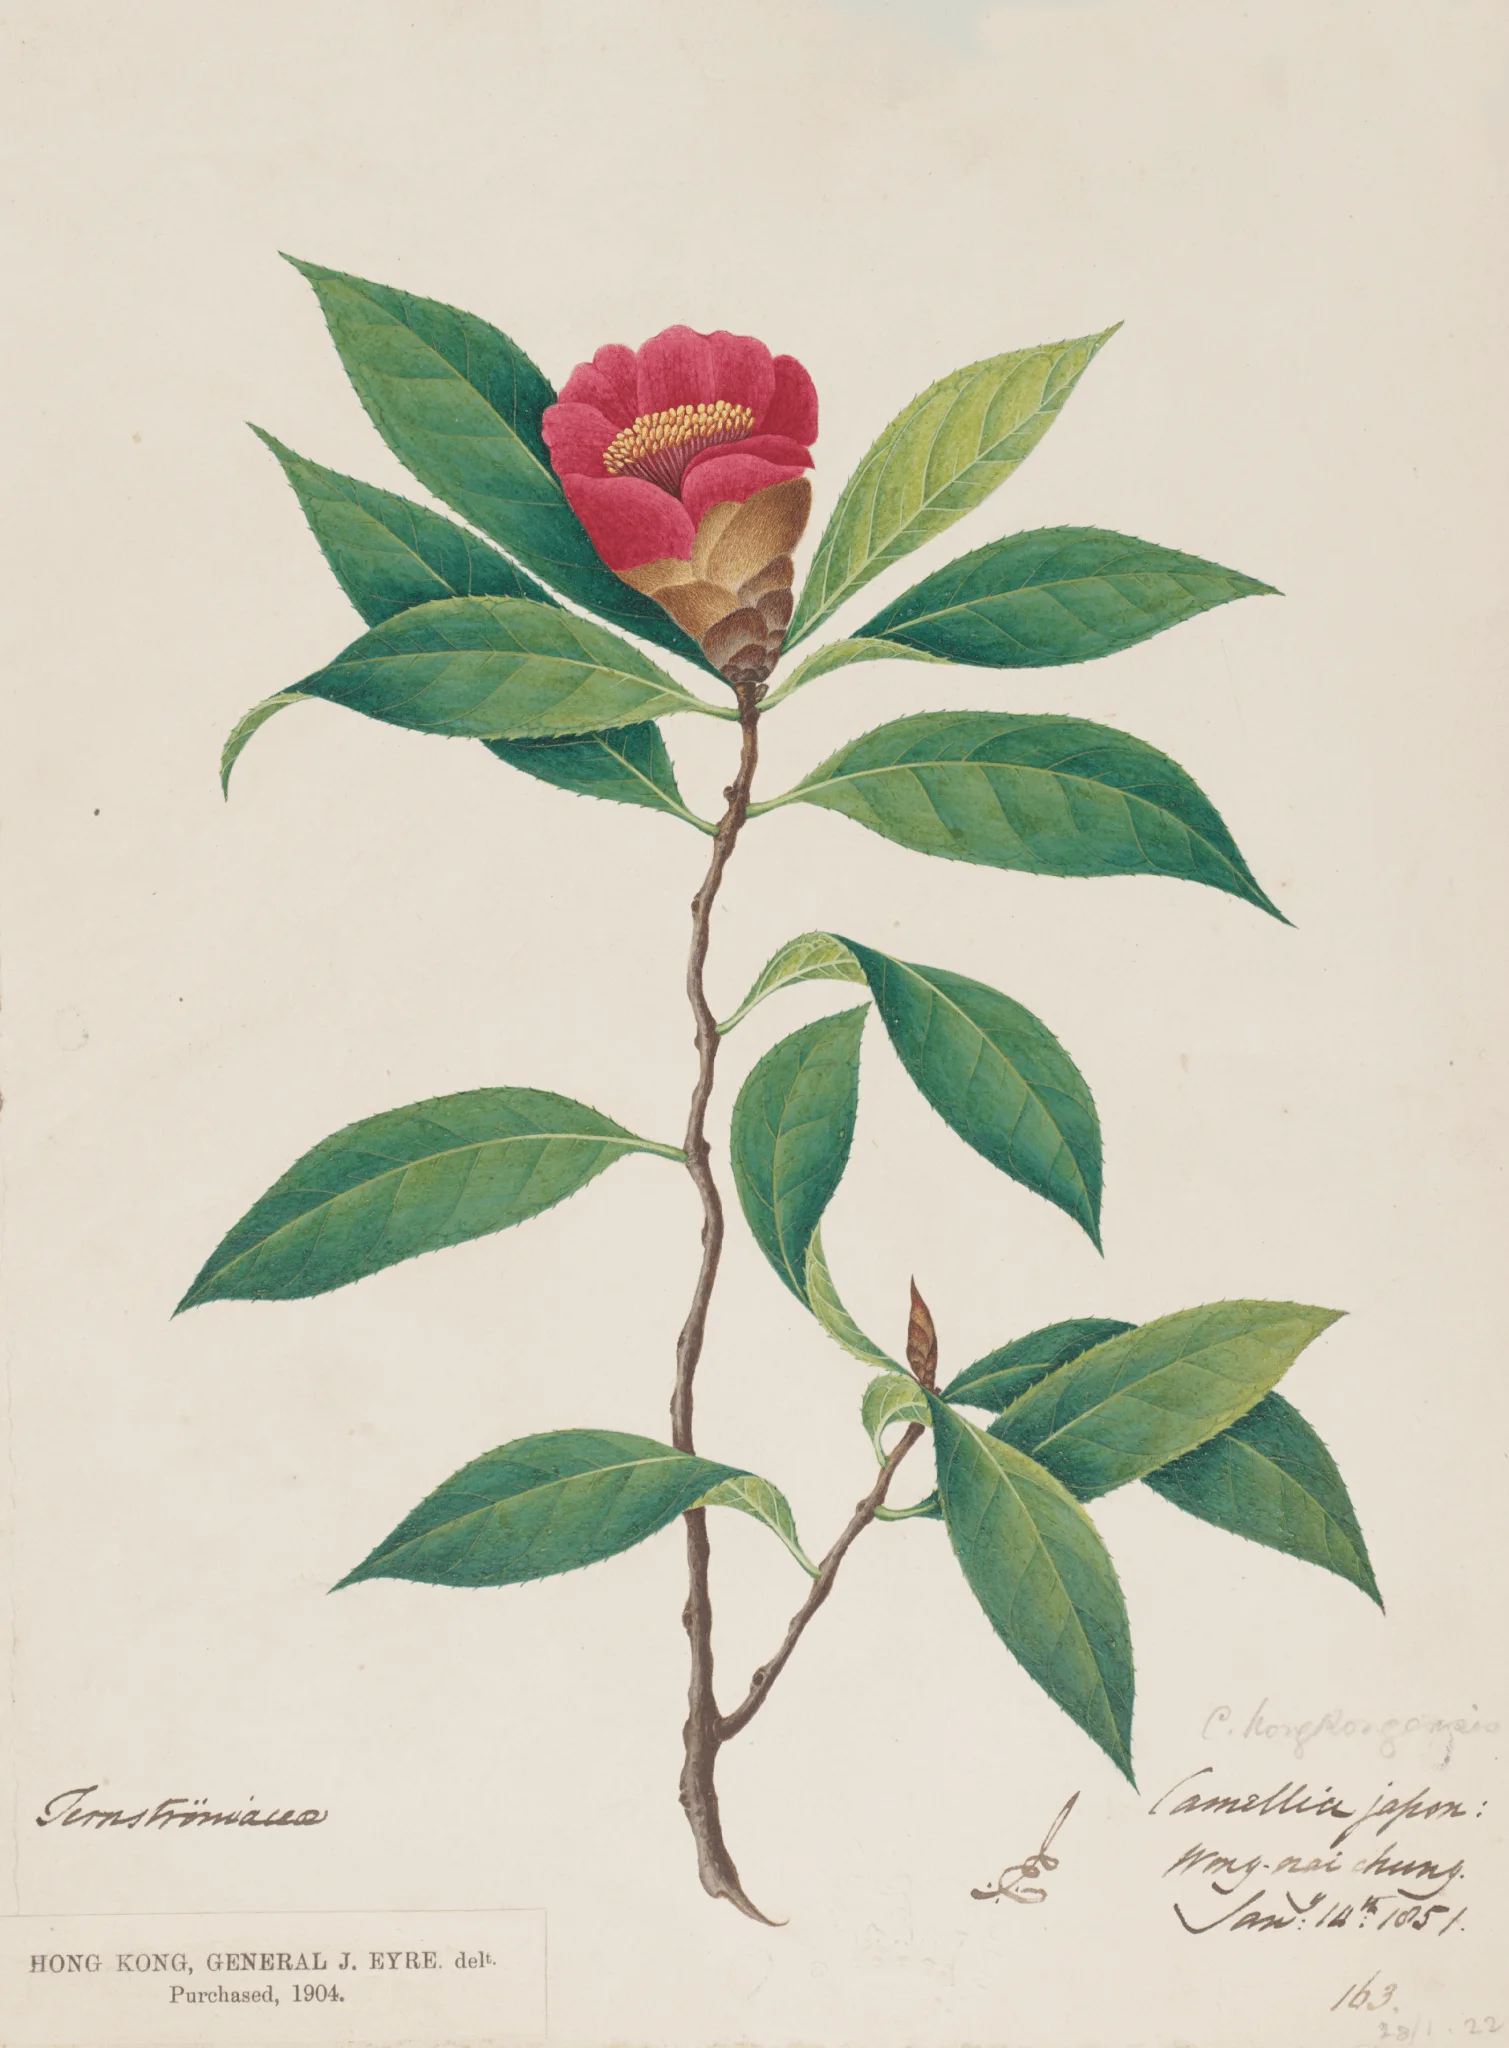 香港茶水彩畫及備忘複本 _約翰·艾爾繪 Replica of Hong Kong Camellia watercolour painting and a note_Painted by John Eyre